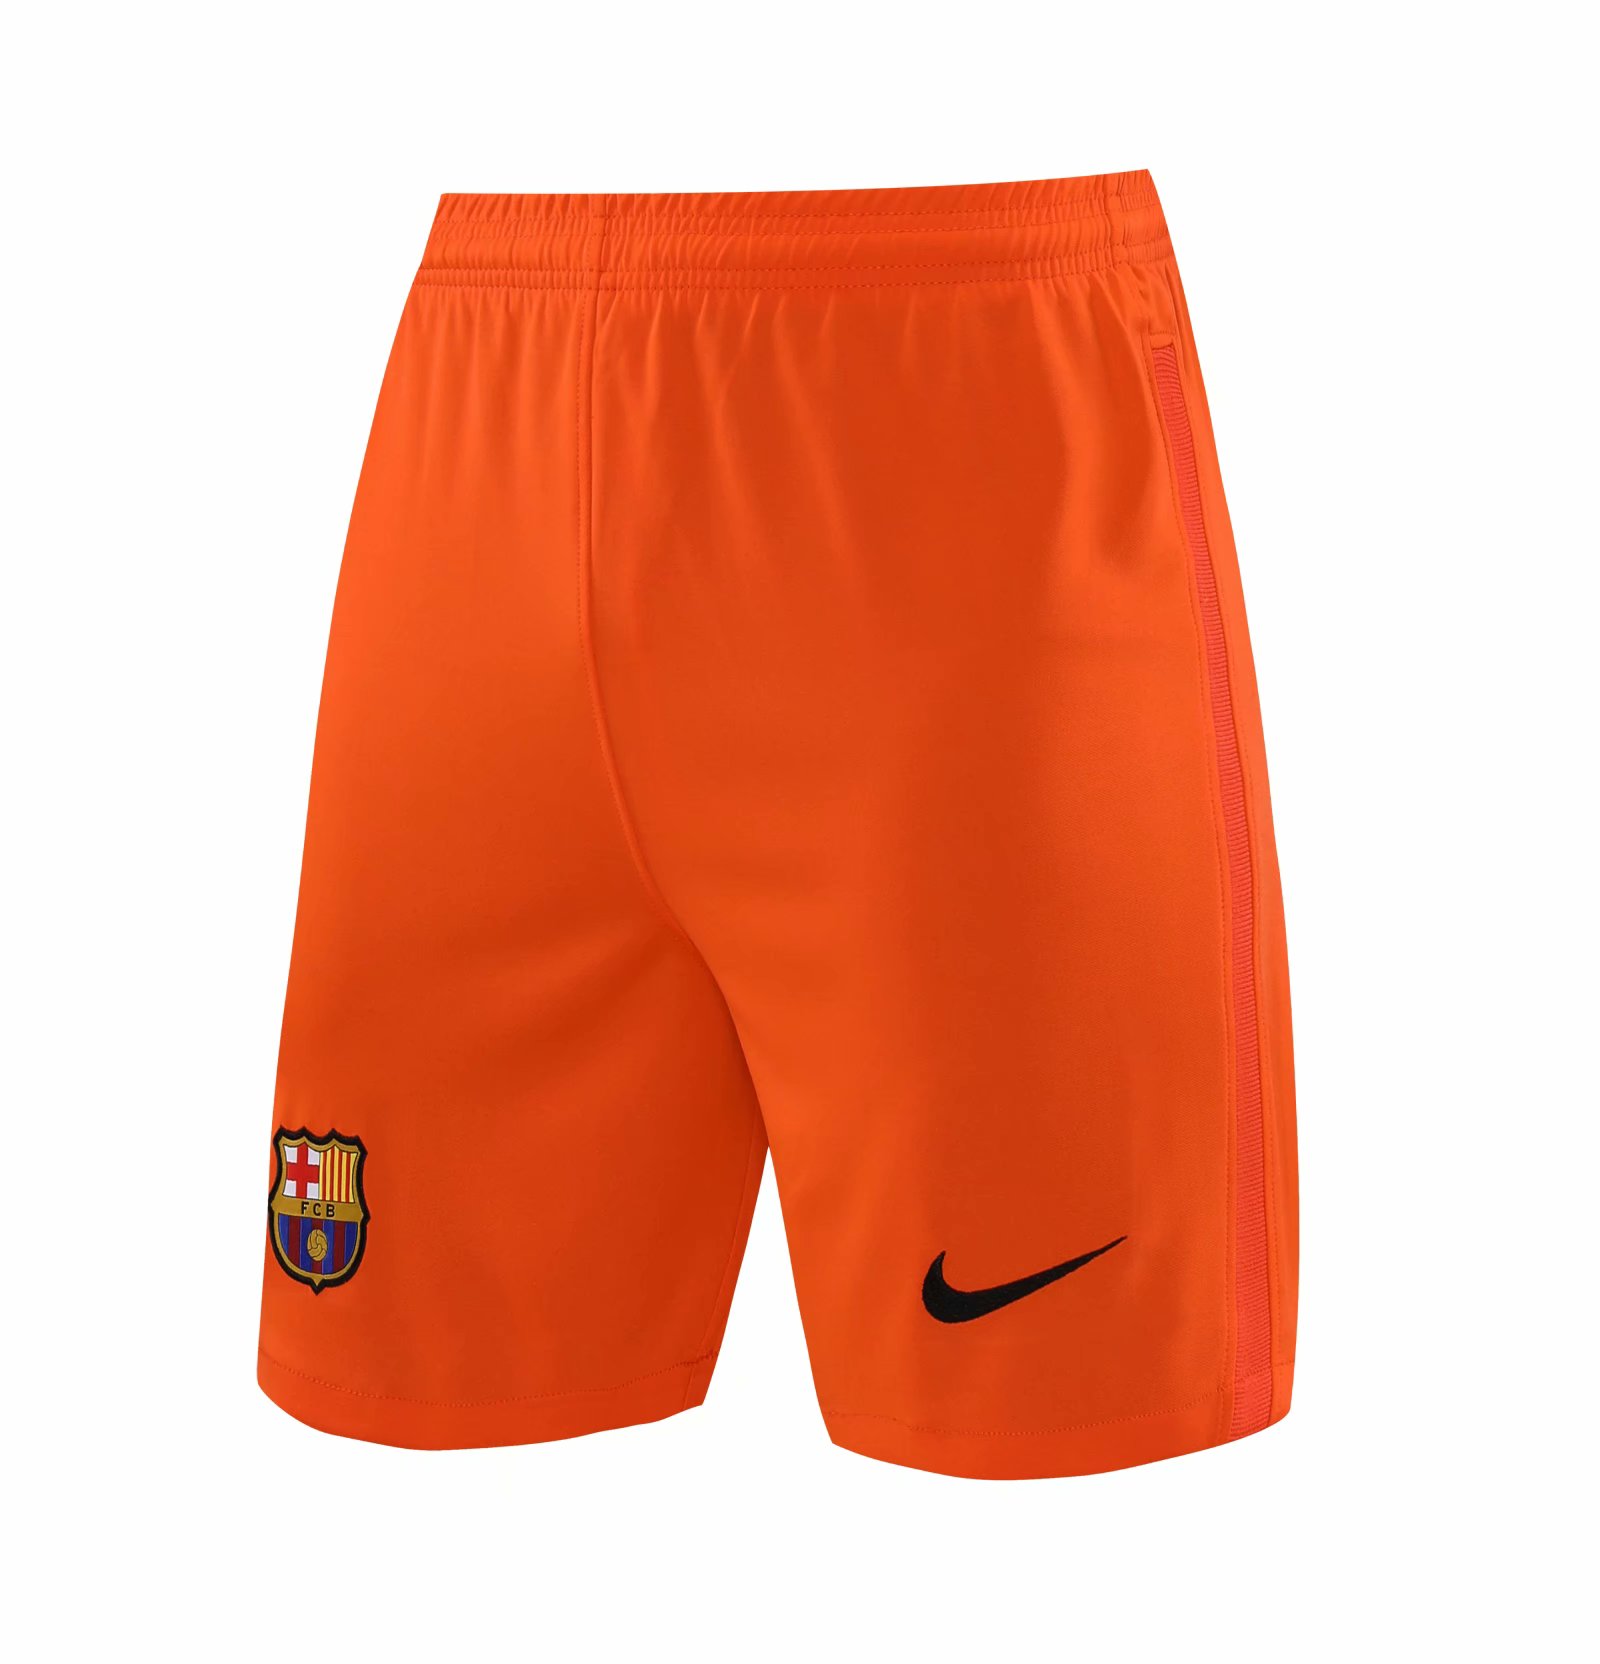 Barcelona Soccer Short Goalkeeper Orange Replica 2021/22